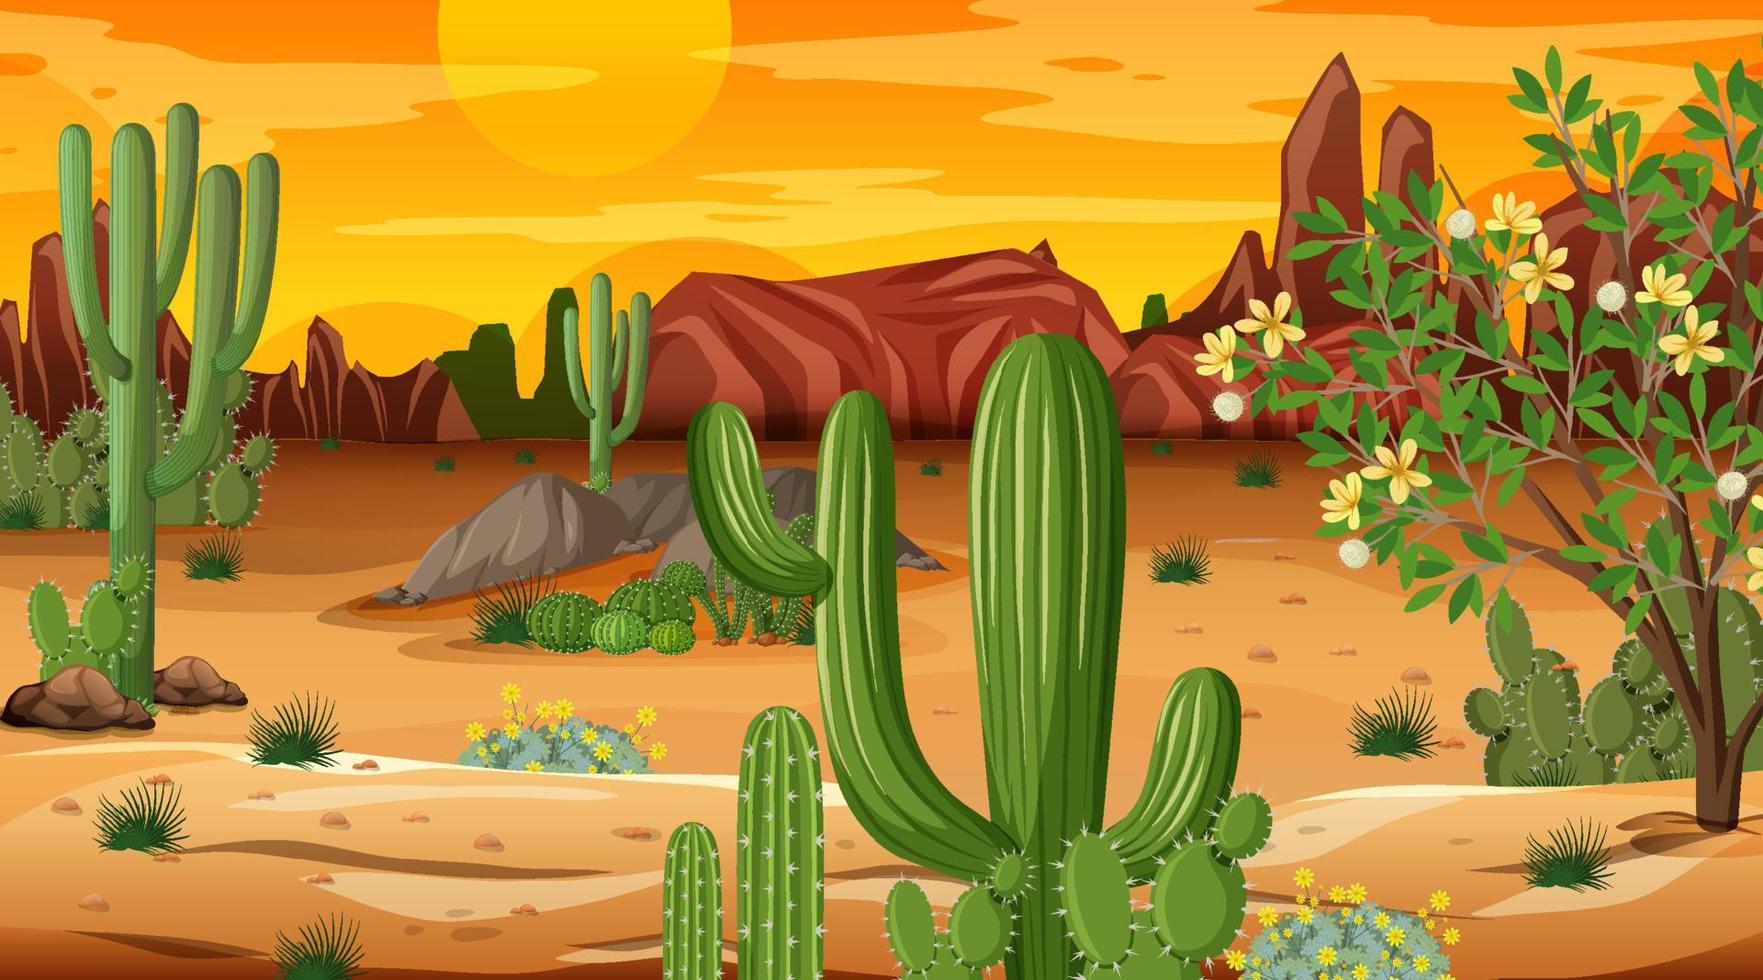 woestijn boslandschap bij zonsondergang tijdscène met veel cactussen vector